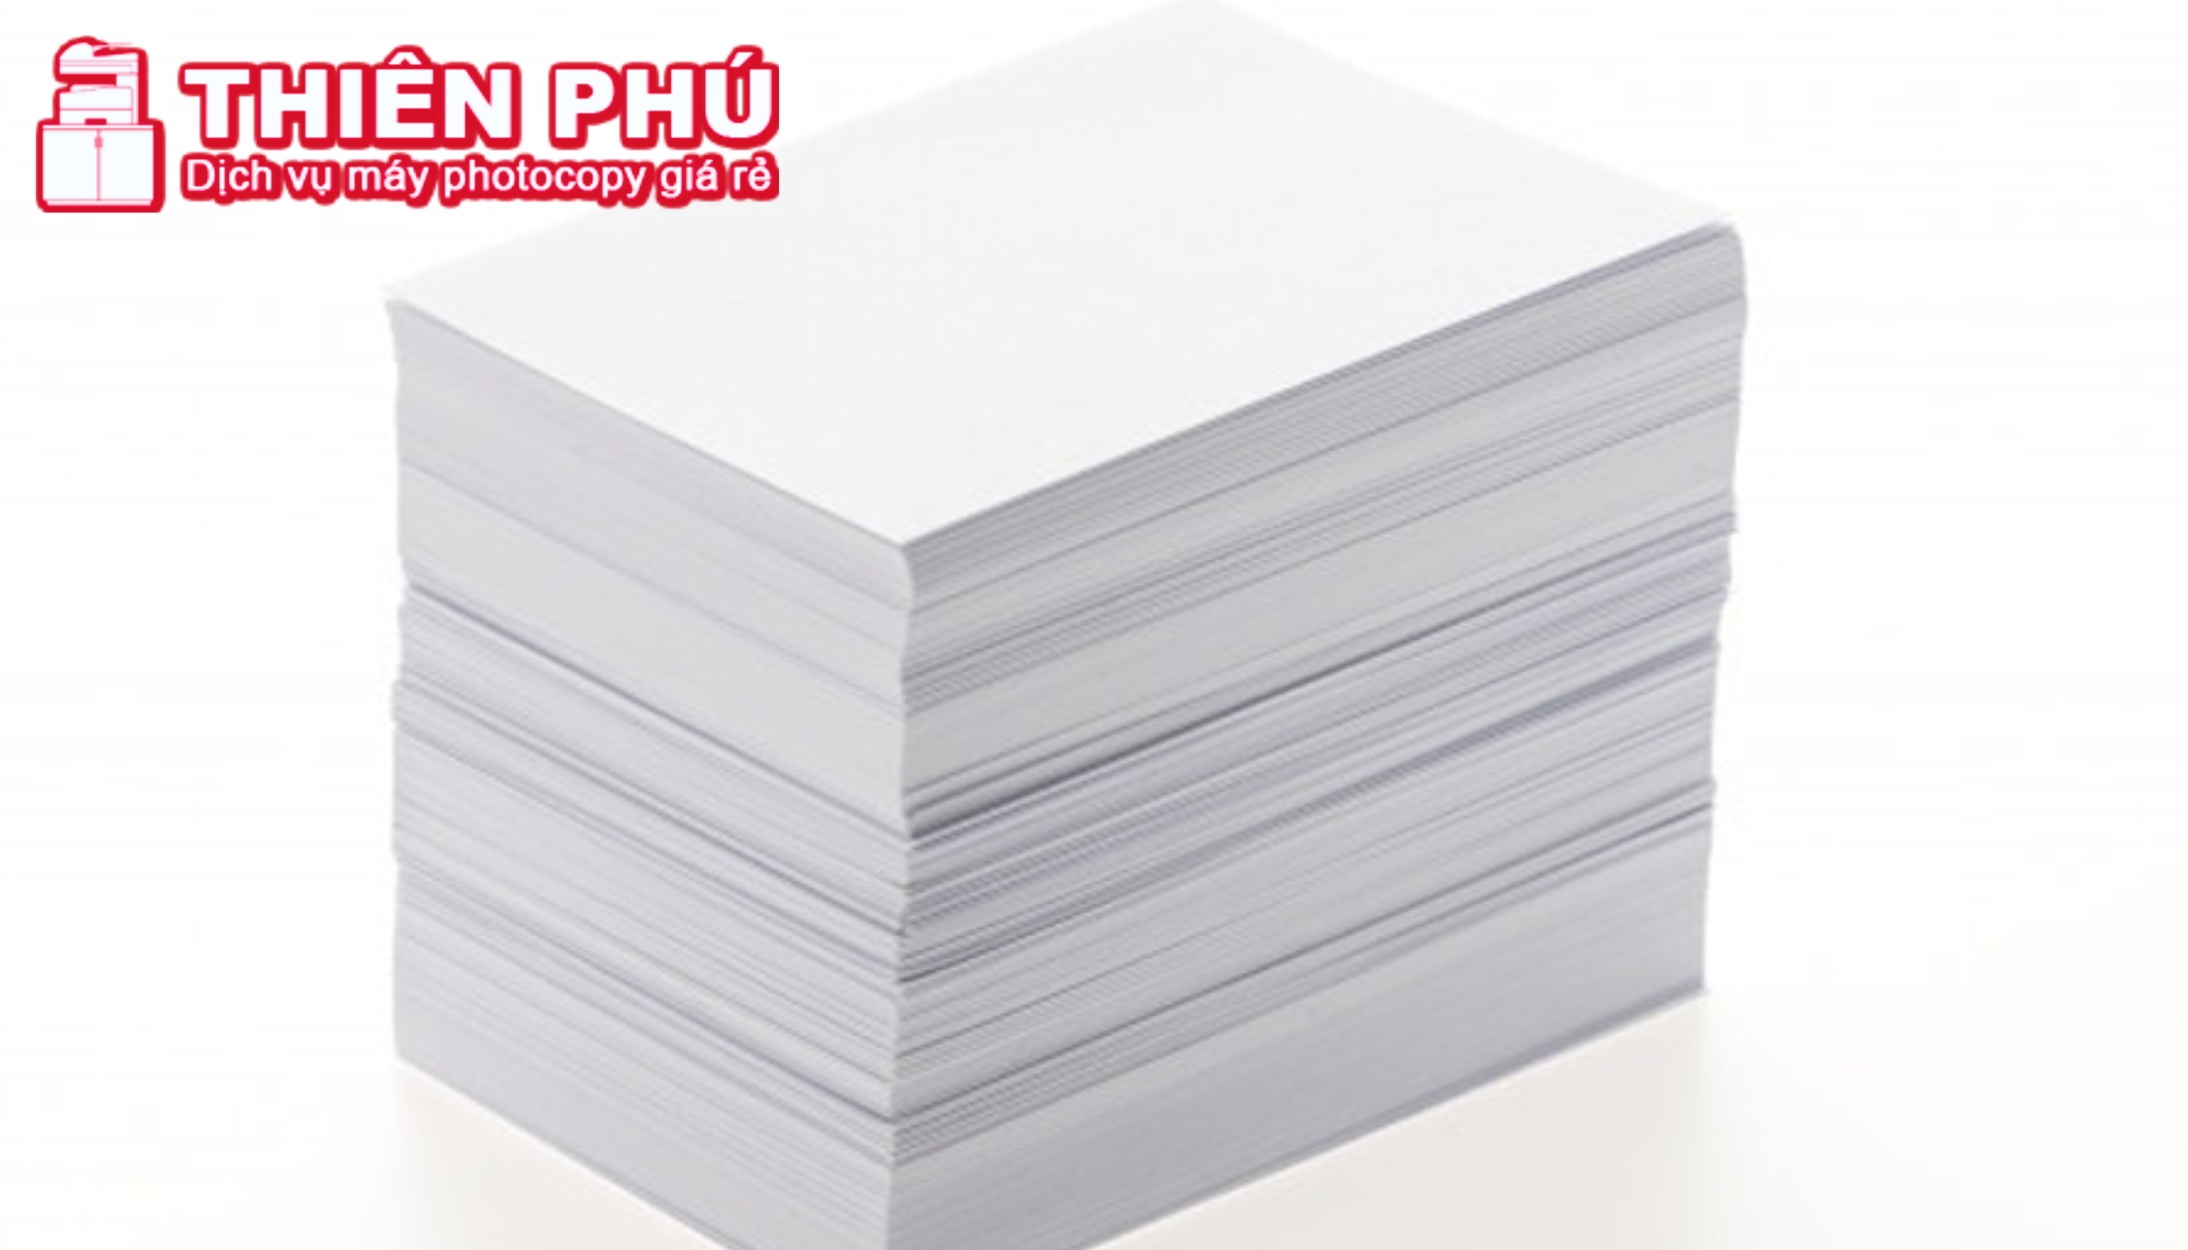 In ấn hai mặt, khổ giấy phù hợp để tiết kiệm giấy in